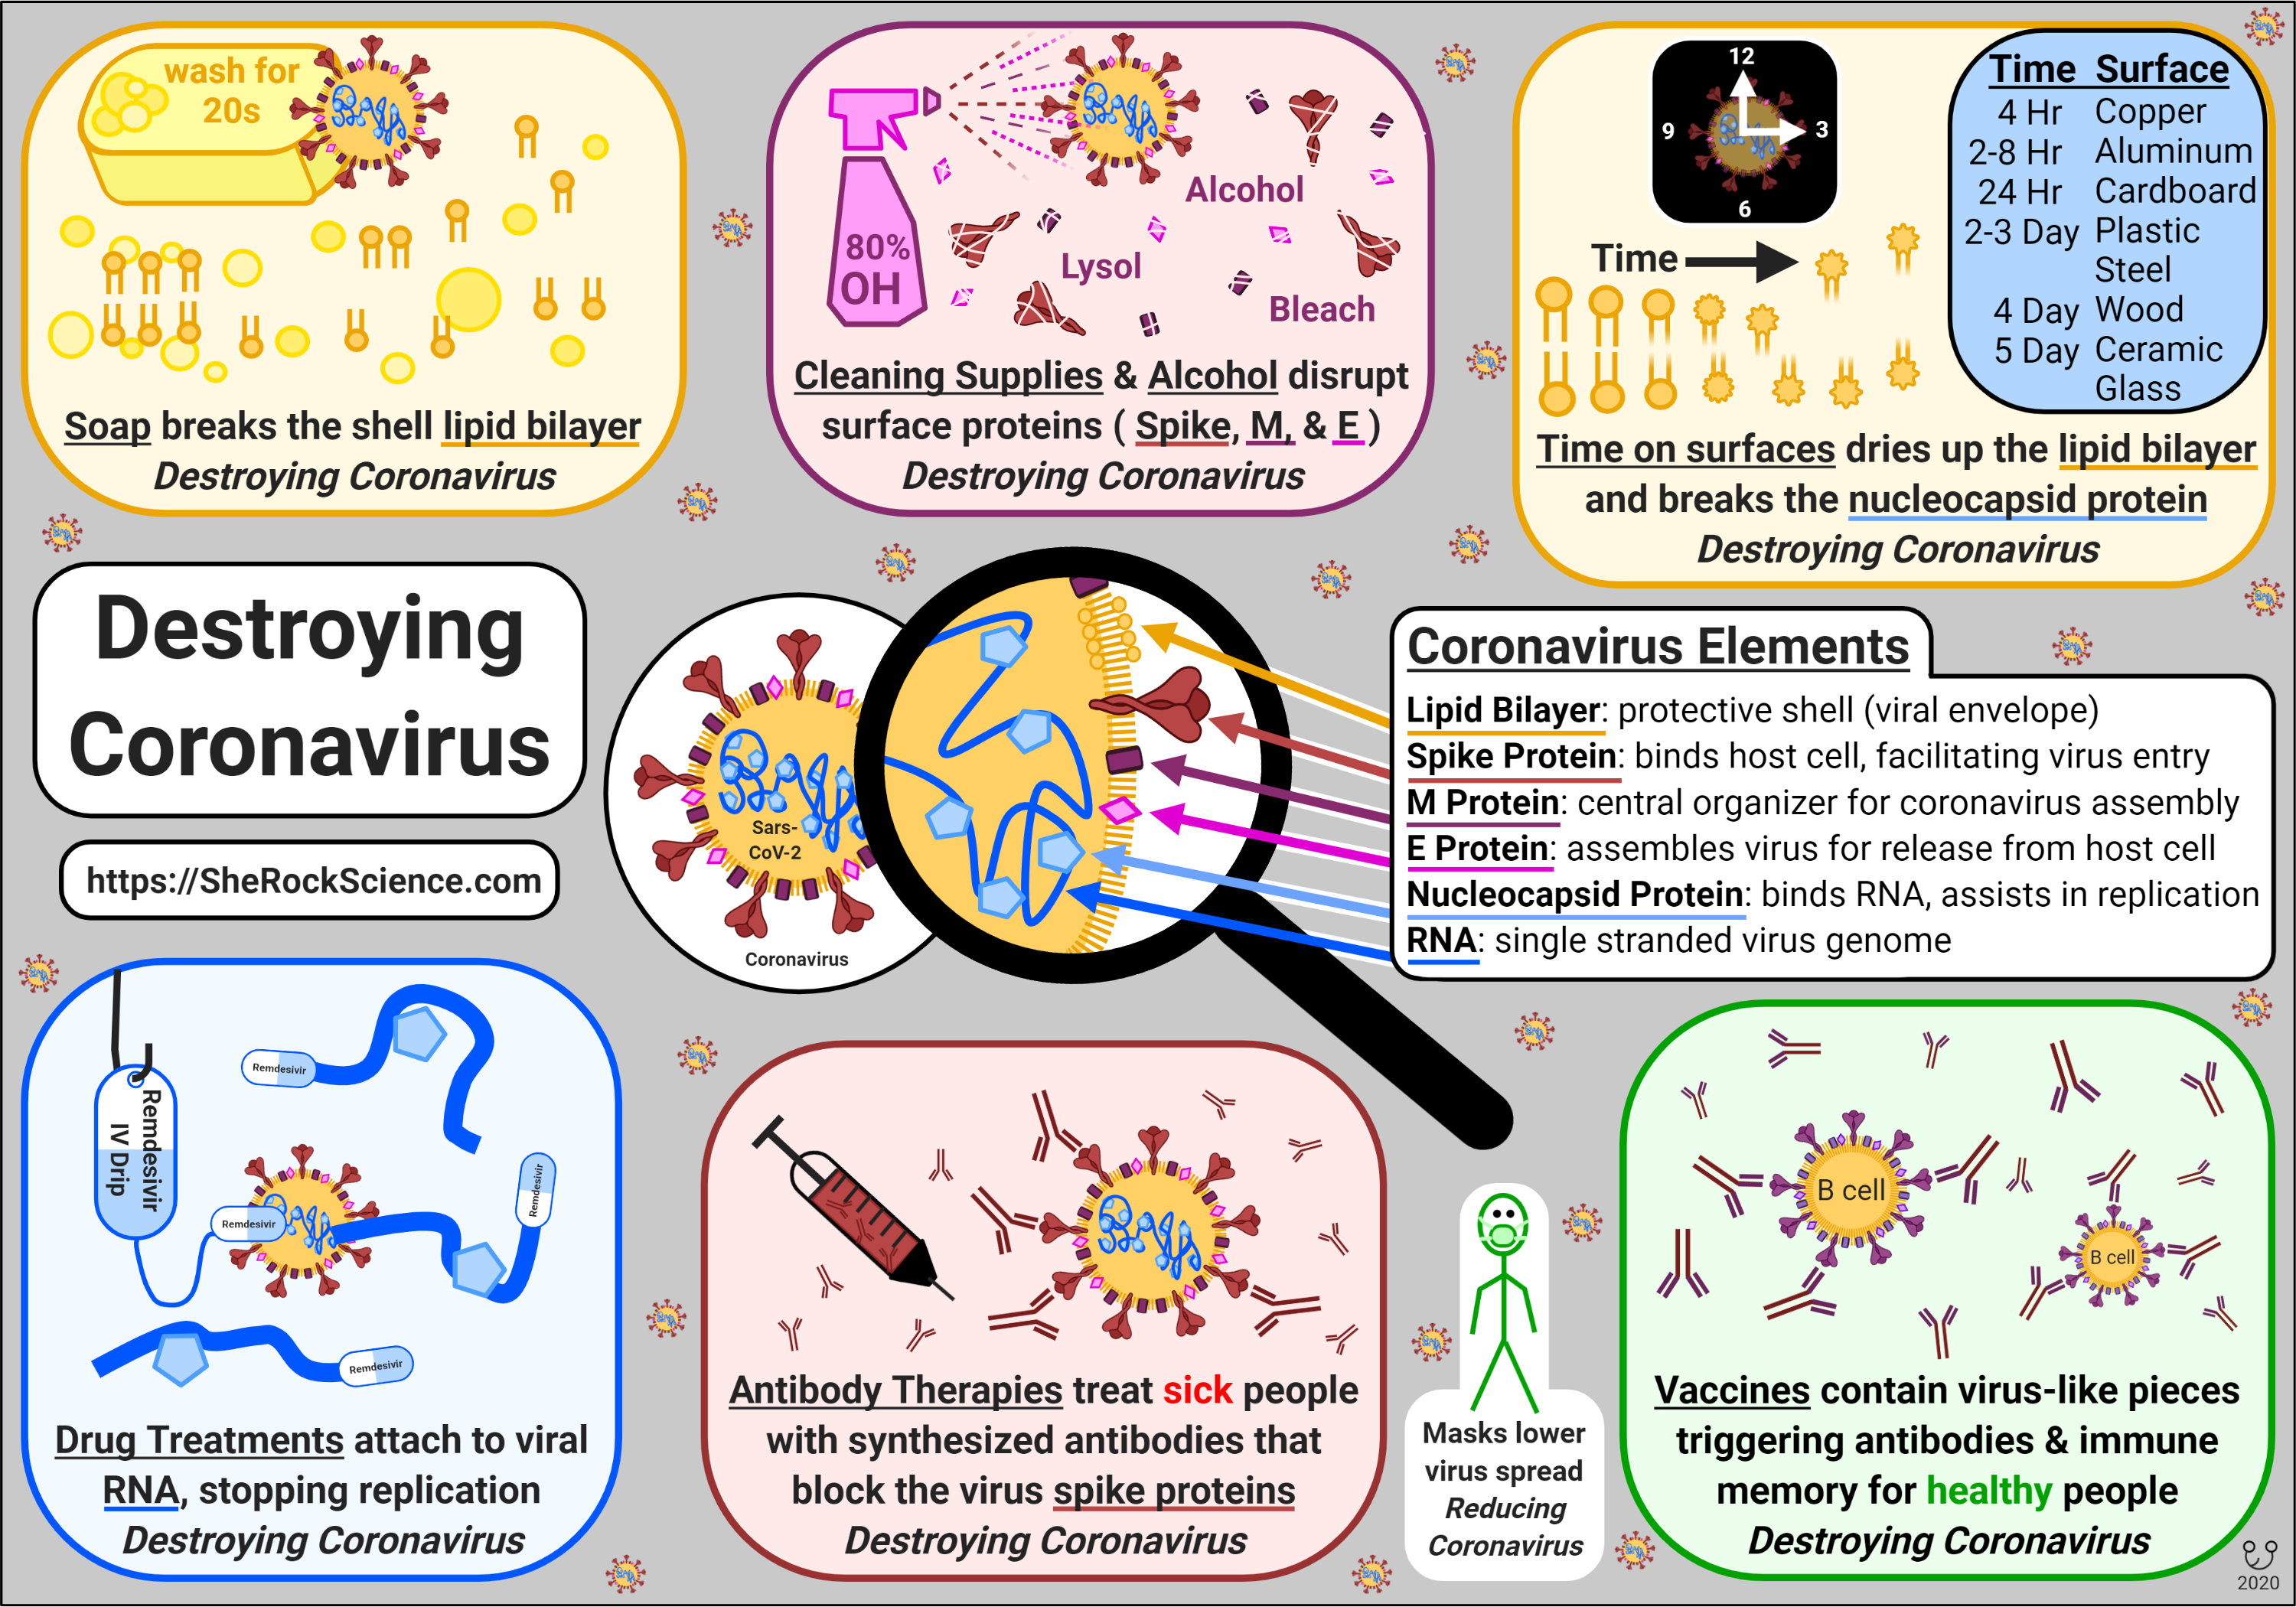 Destroying Coronavirus, by Shira Gordon